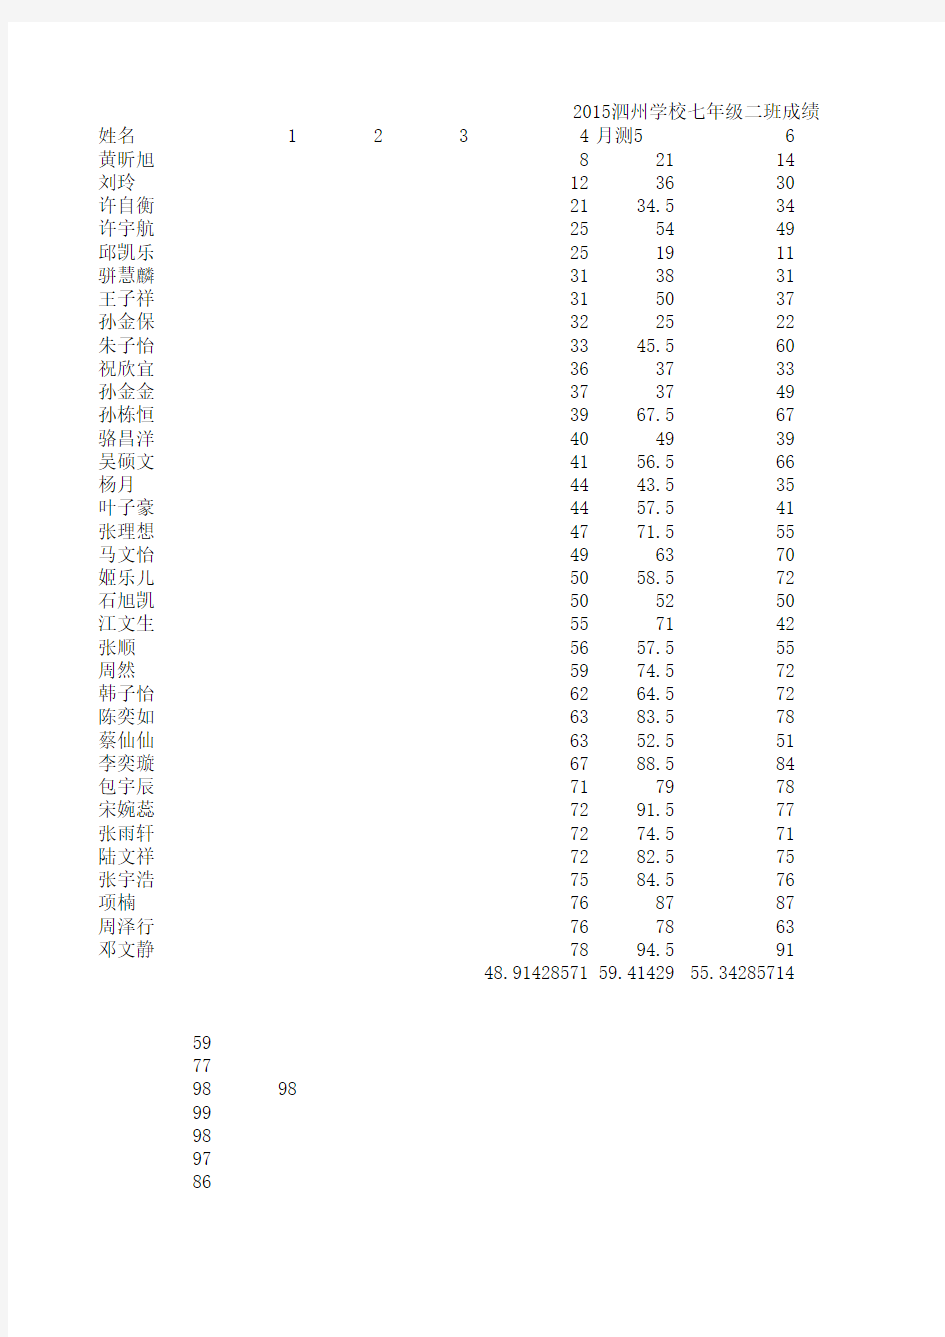 2015泗州学校七年级二班学生成绩表